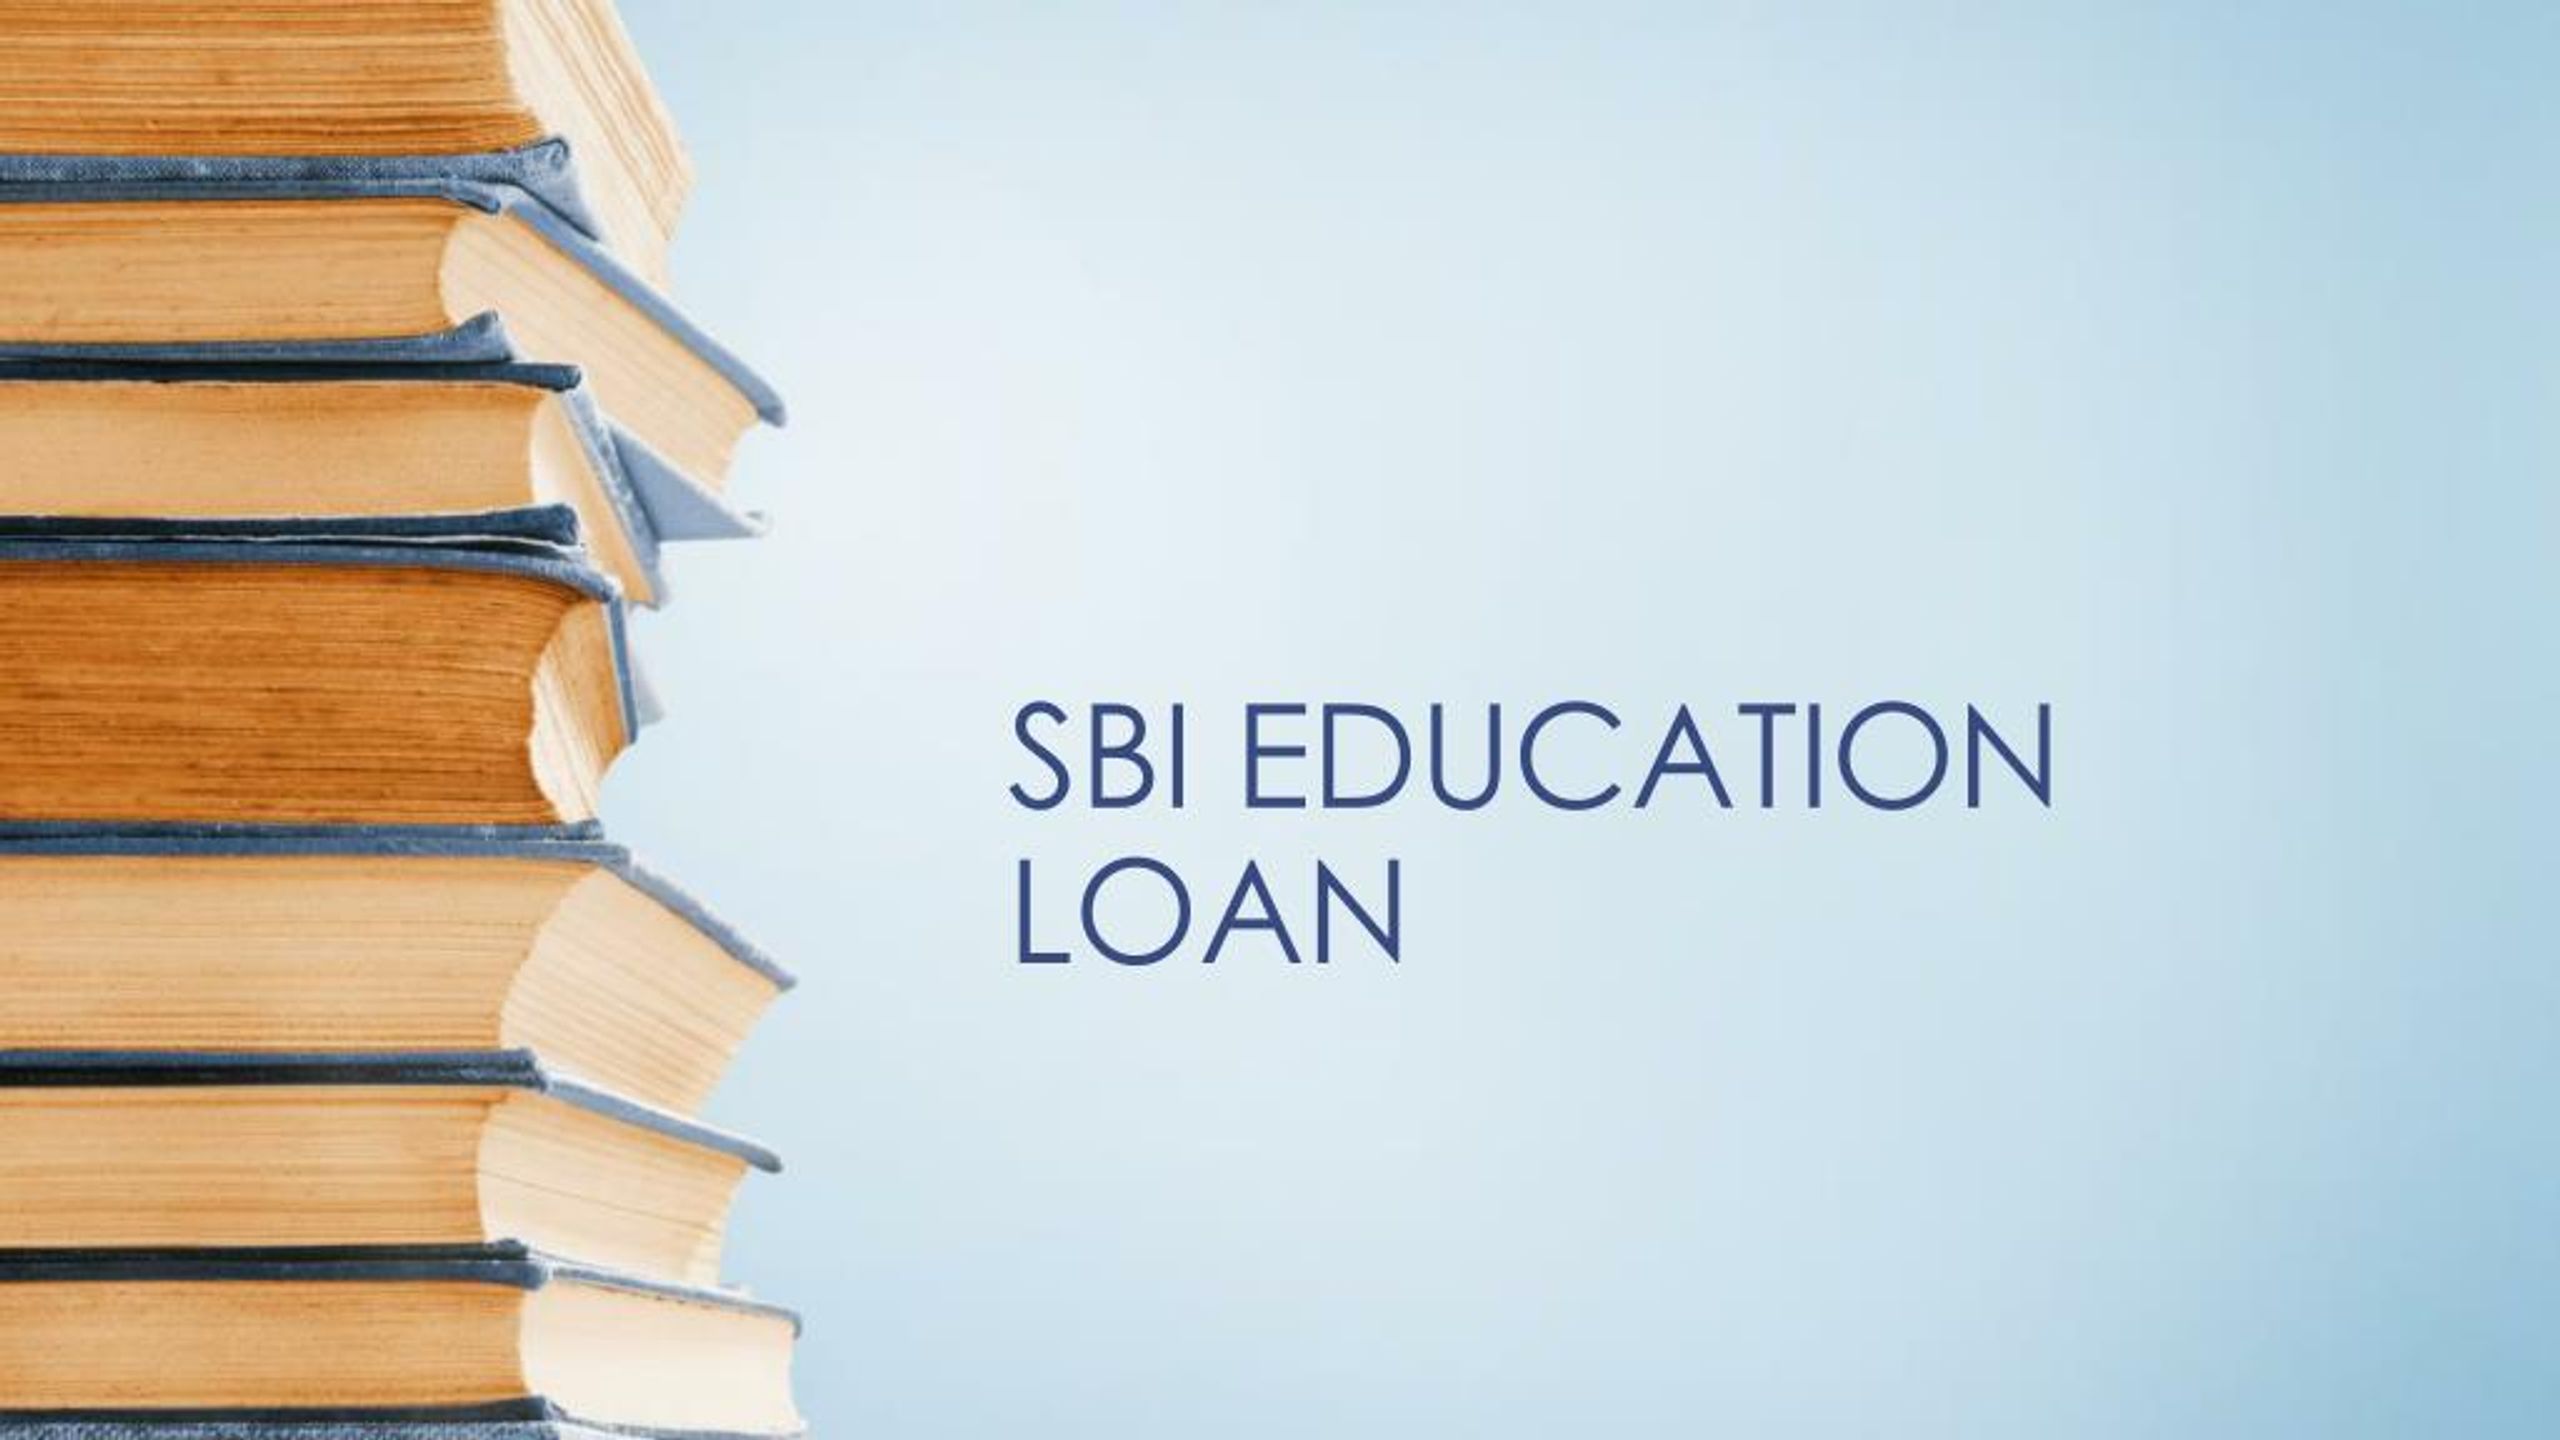 ppt on sbi education loan